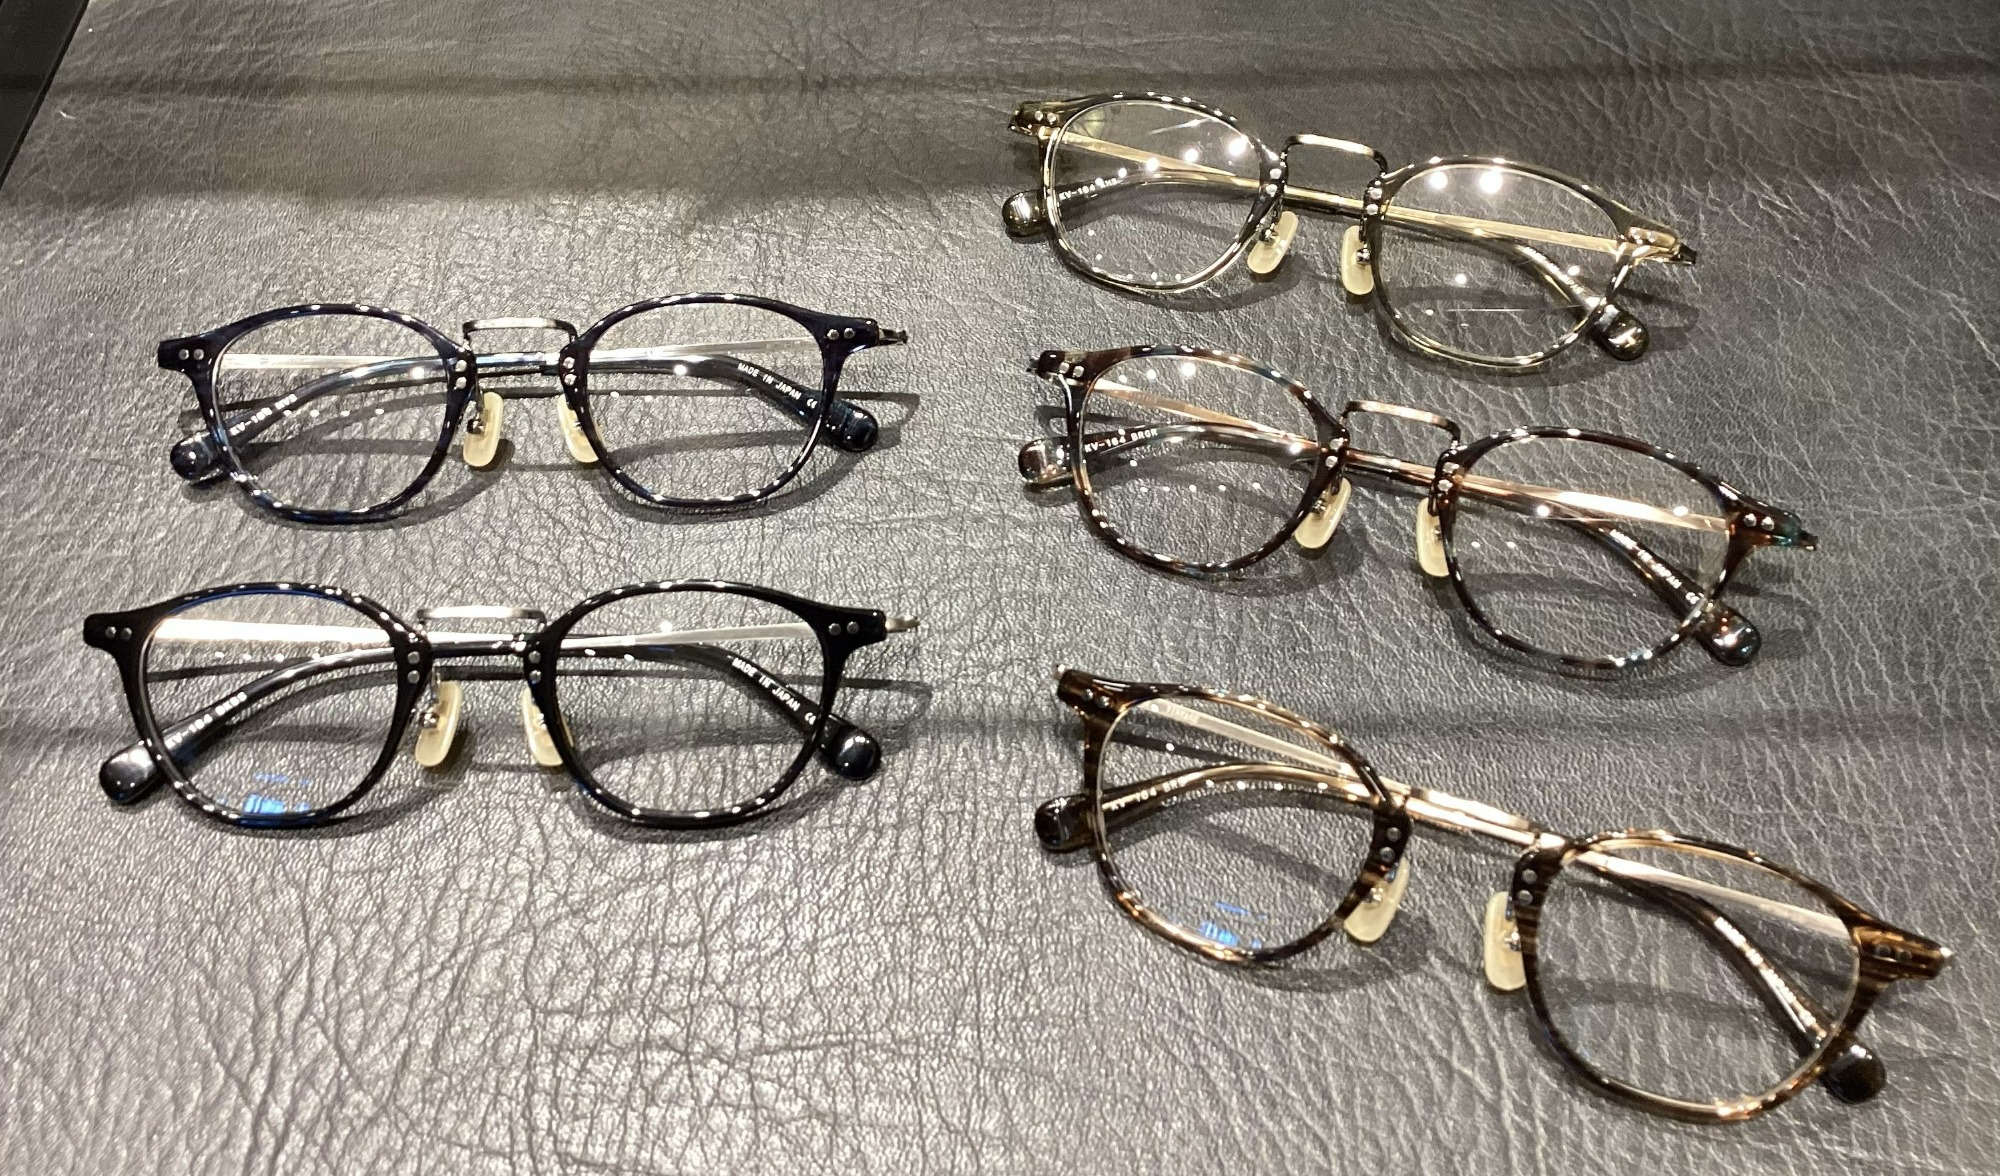 金子眼鏡 - サングラス/メガネ